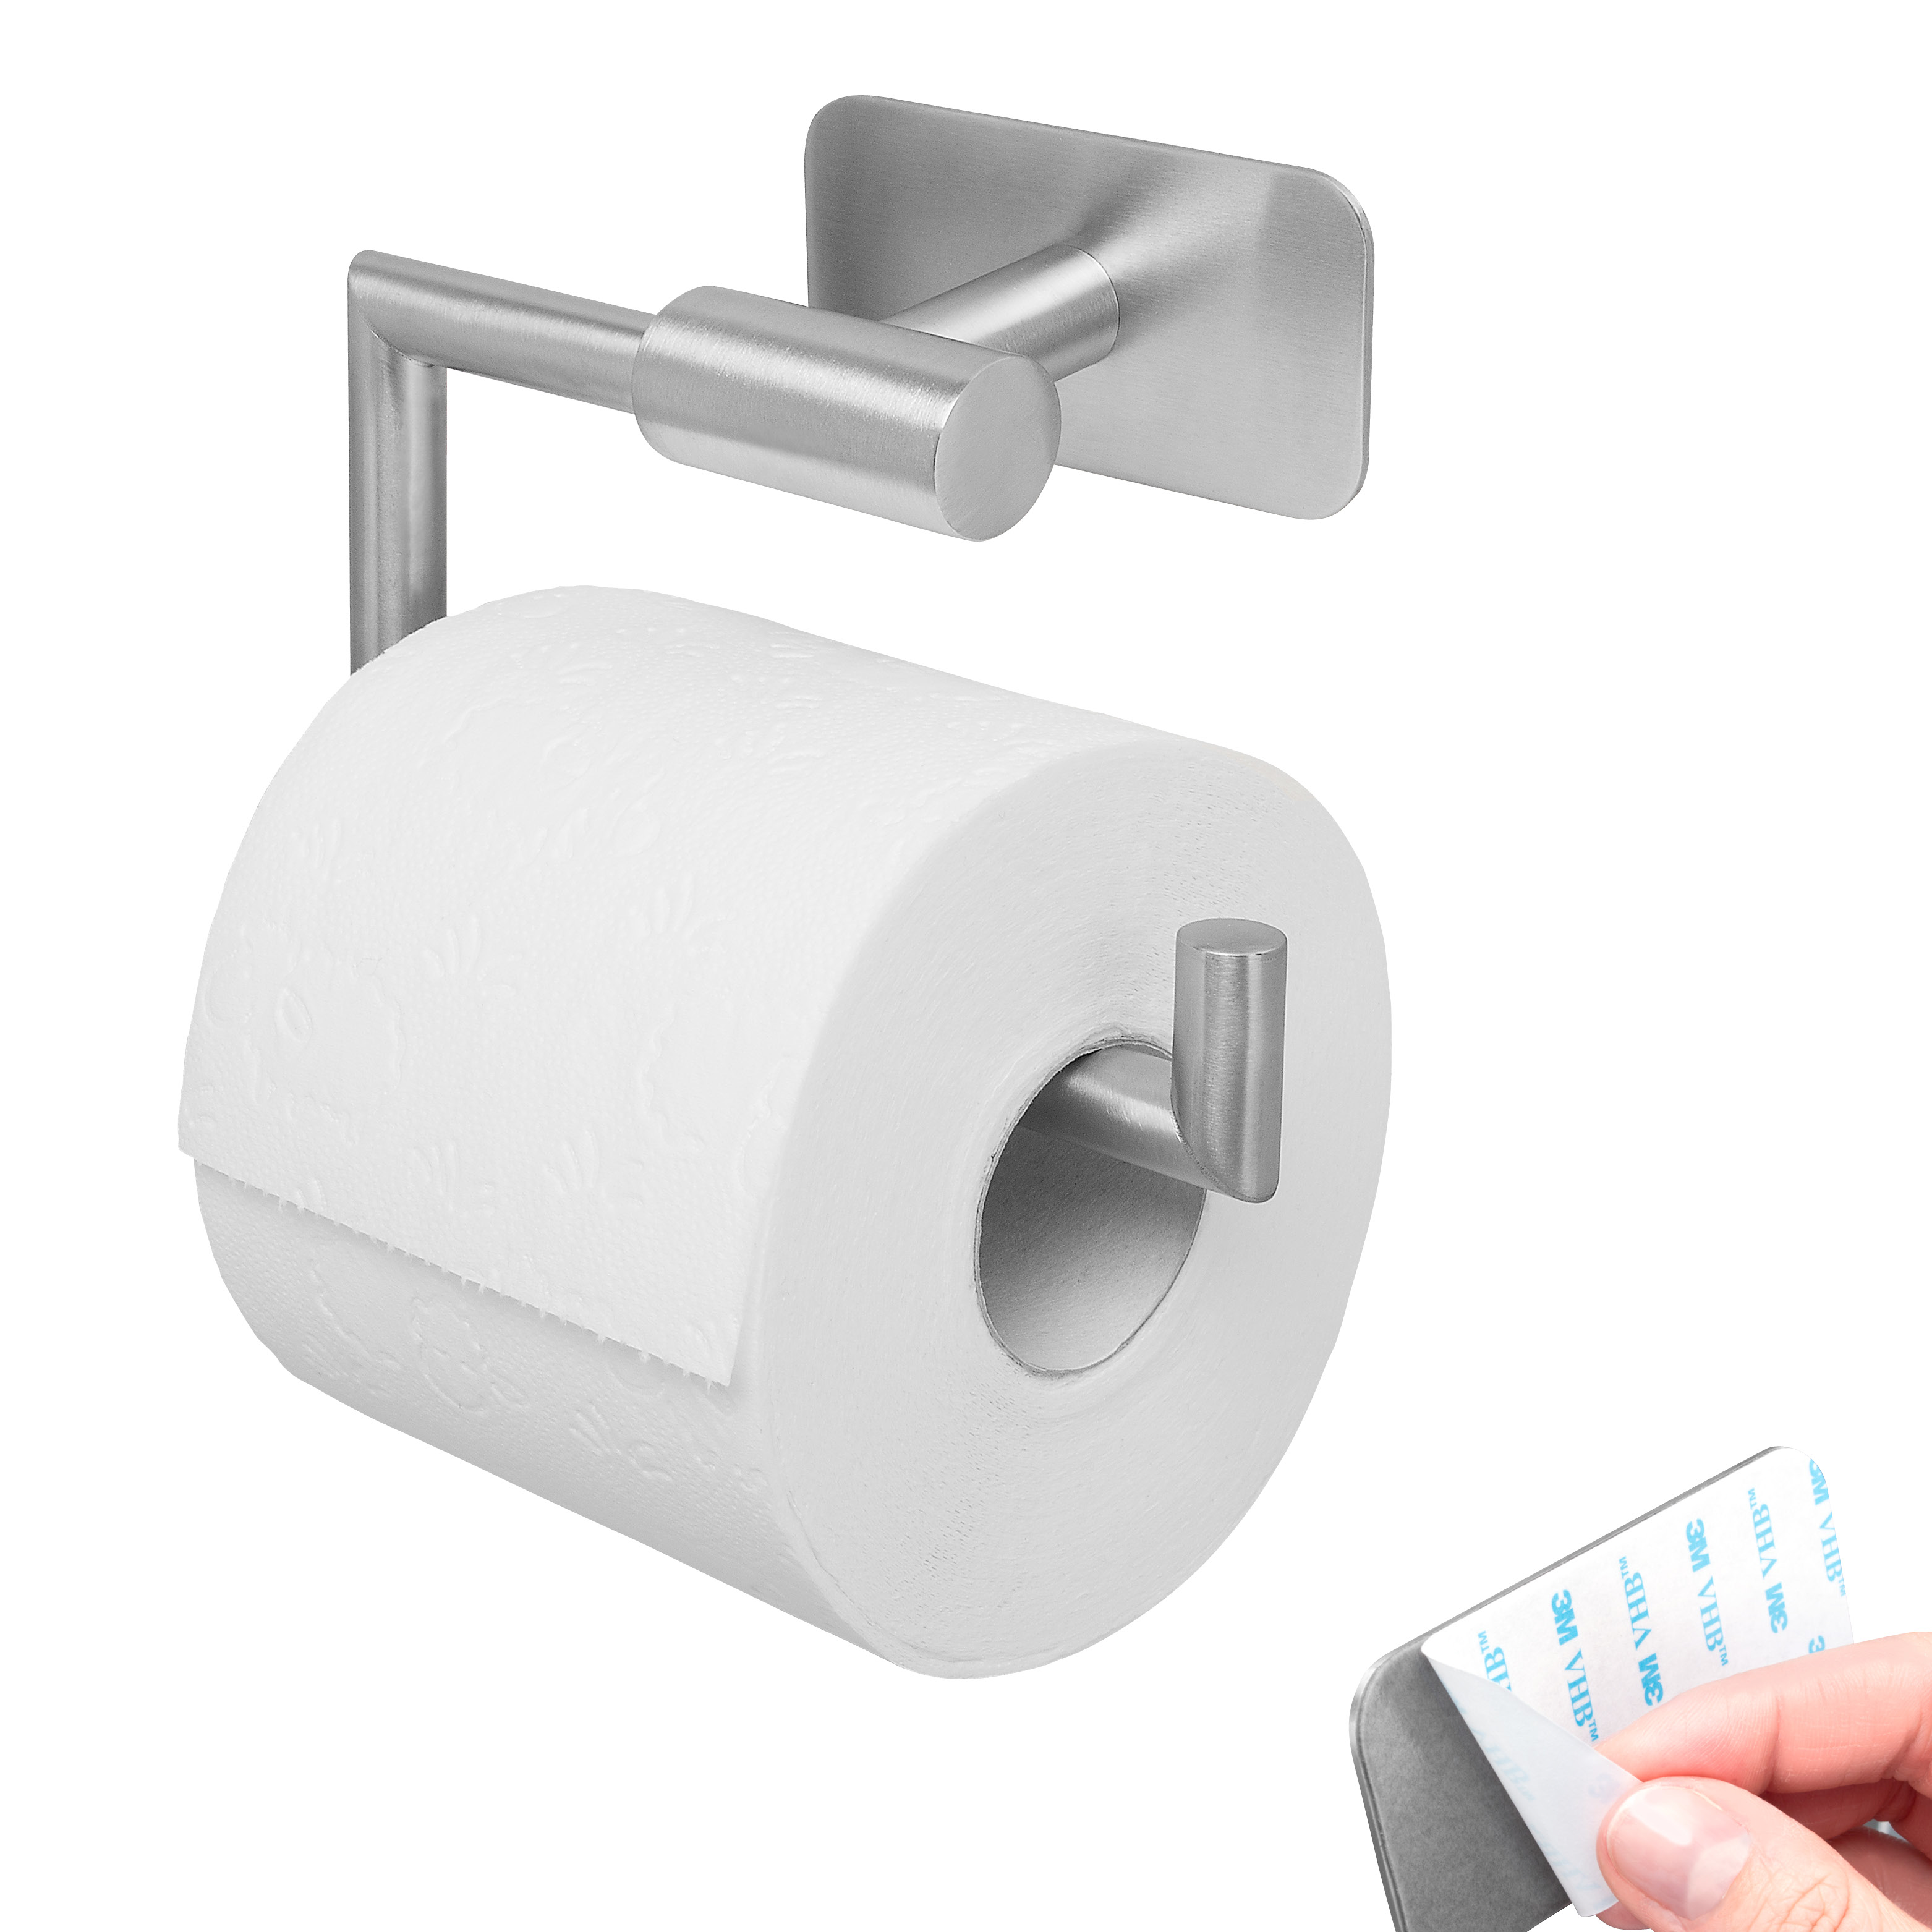 Bad-Serie PIAZZA TAPE Toilettenpapierhalter selbstklebend Edelstahl, matt kein Bohren 3M Klebebefestigung Papierrollenhalter